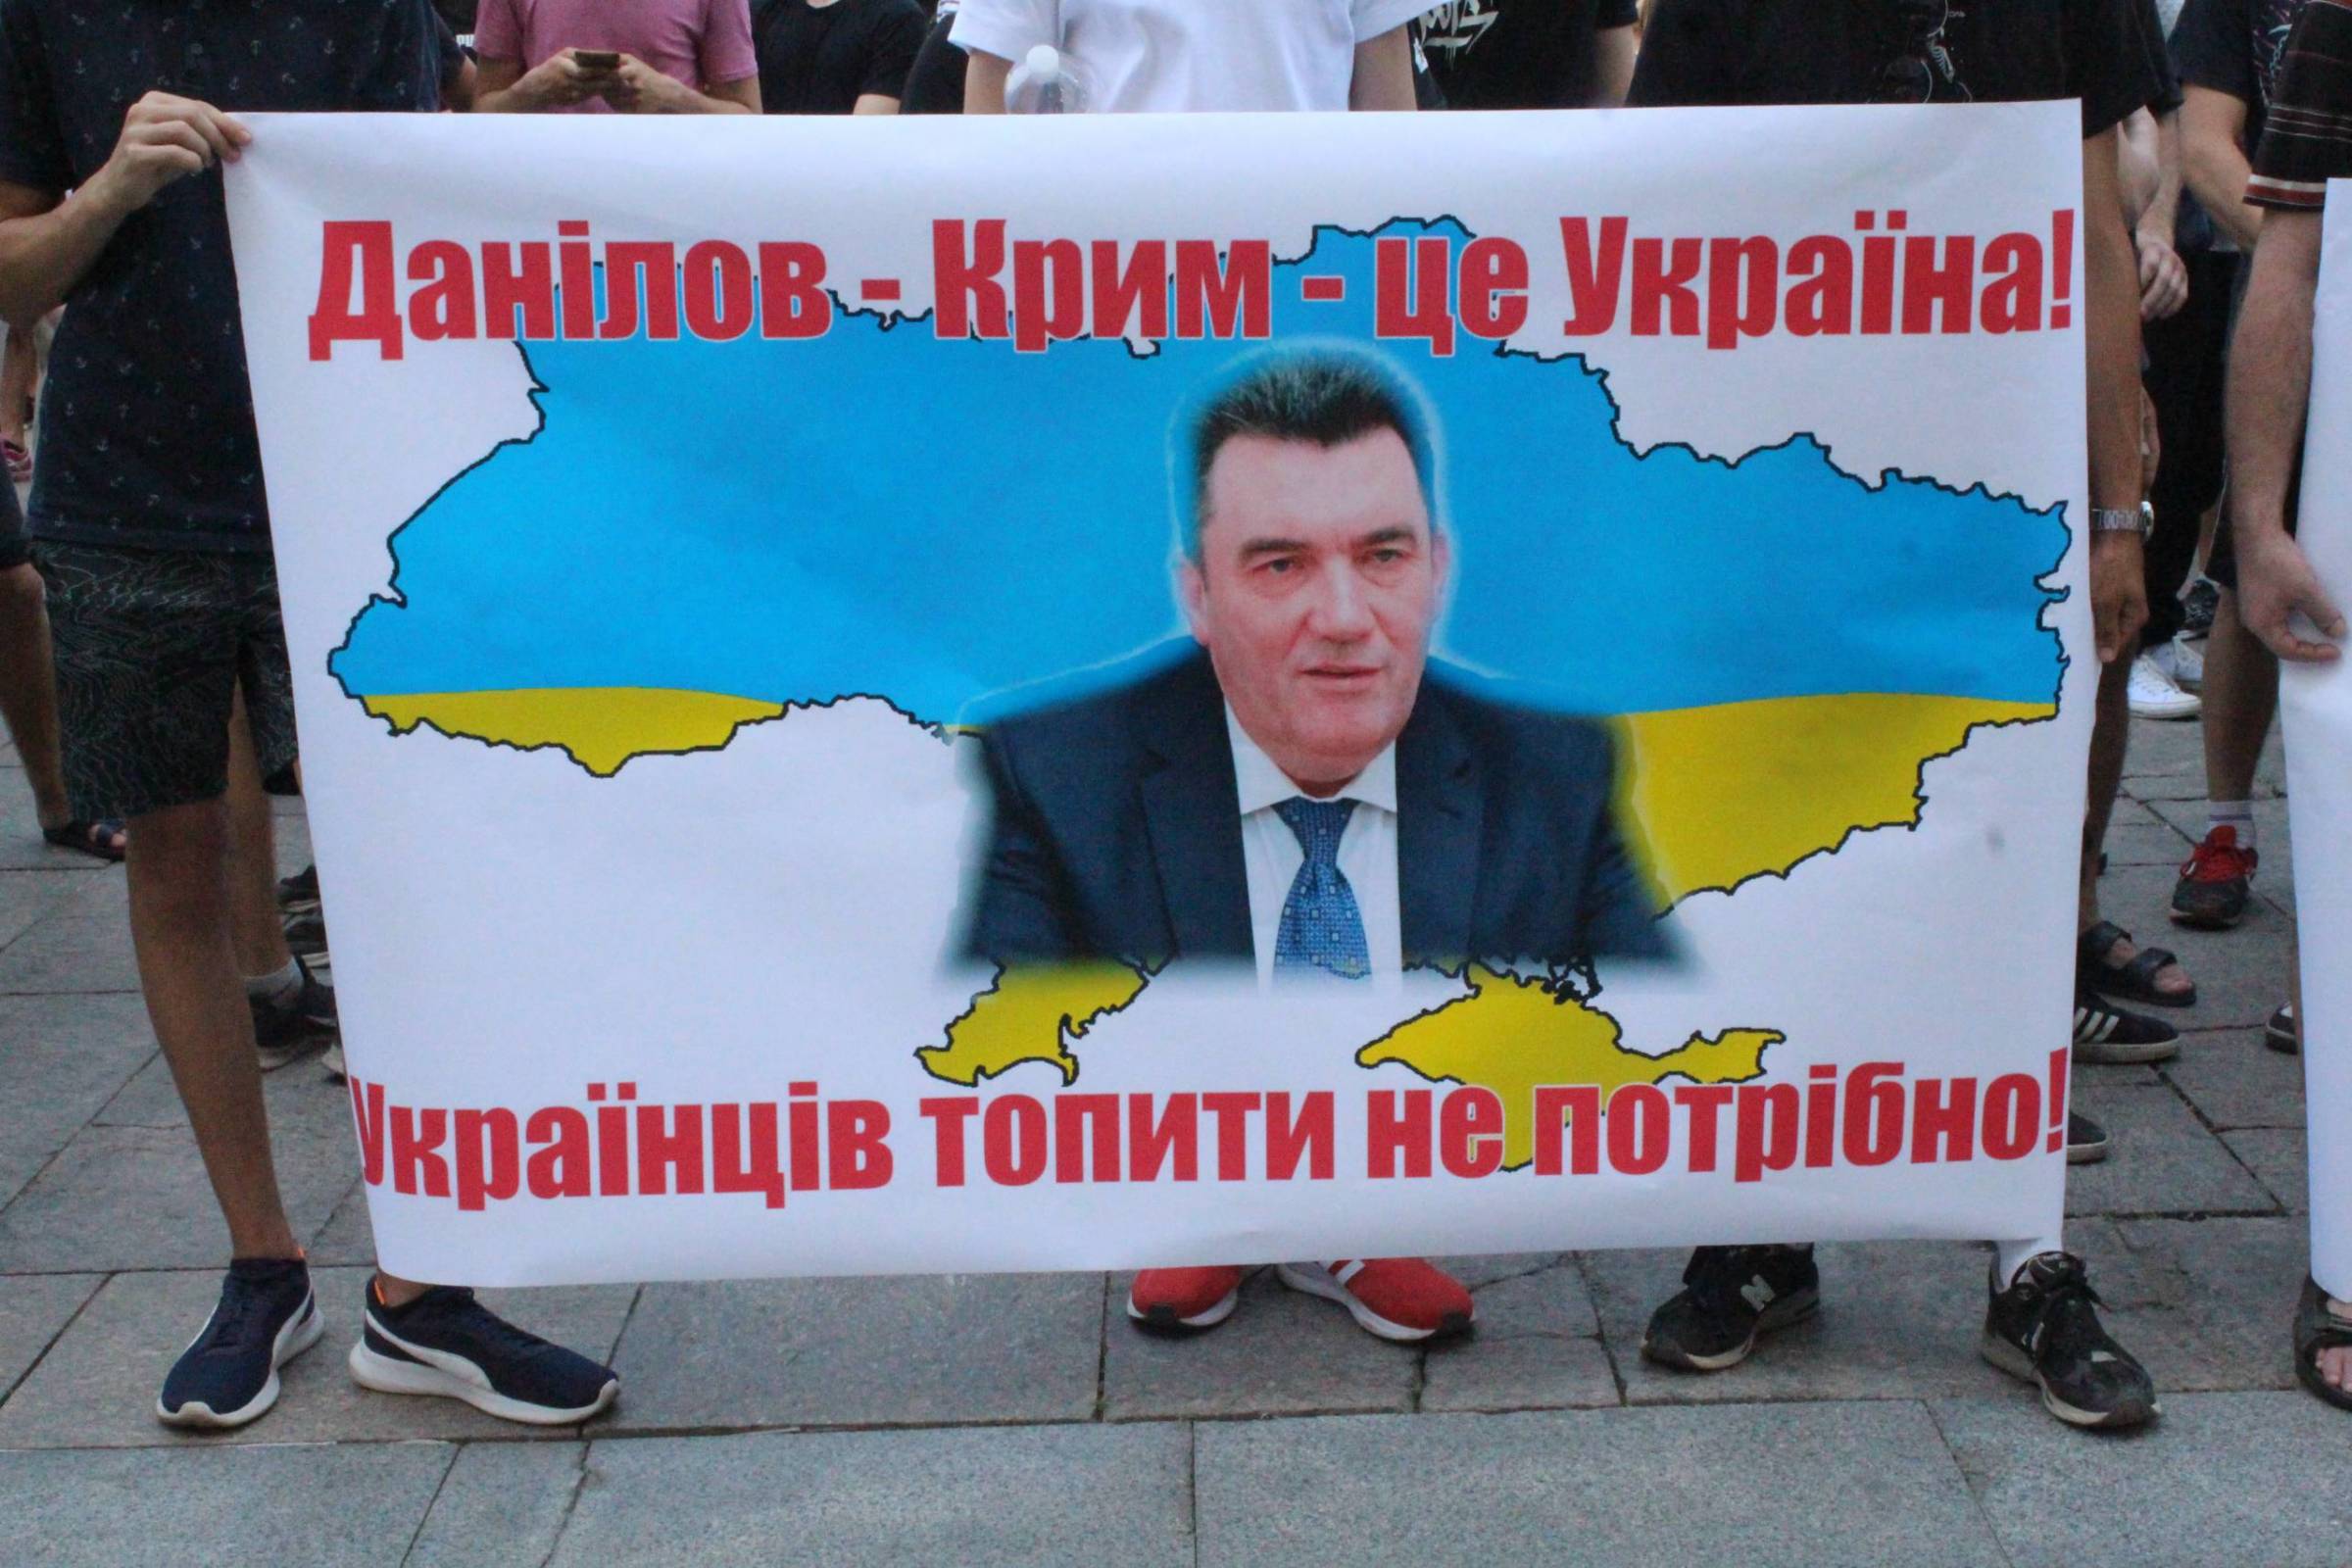 Мітинг під стінами ОП: чому активісти вимагають у президента відставки Данілова (ФОТО, ВІДЕО) - фото 2